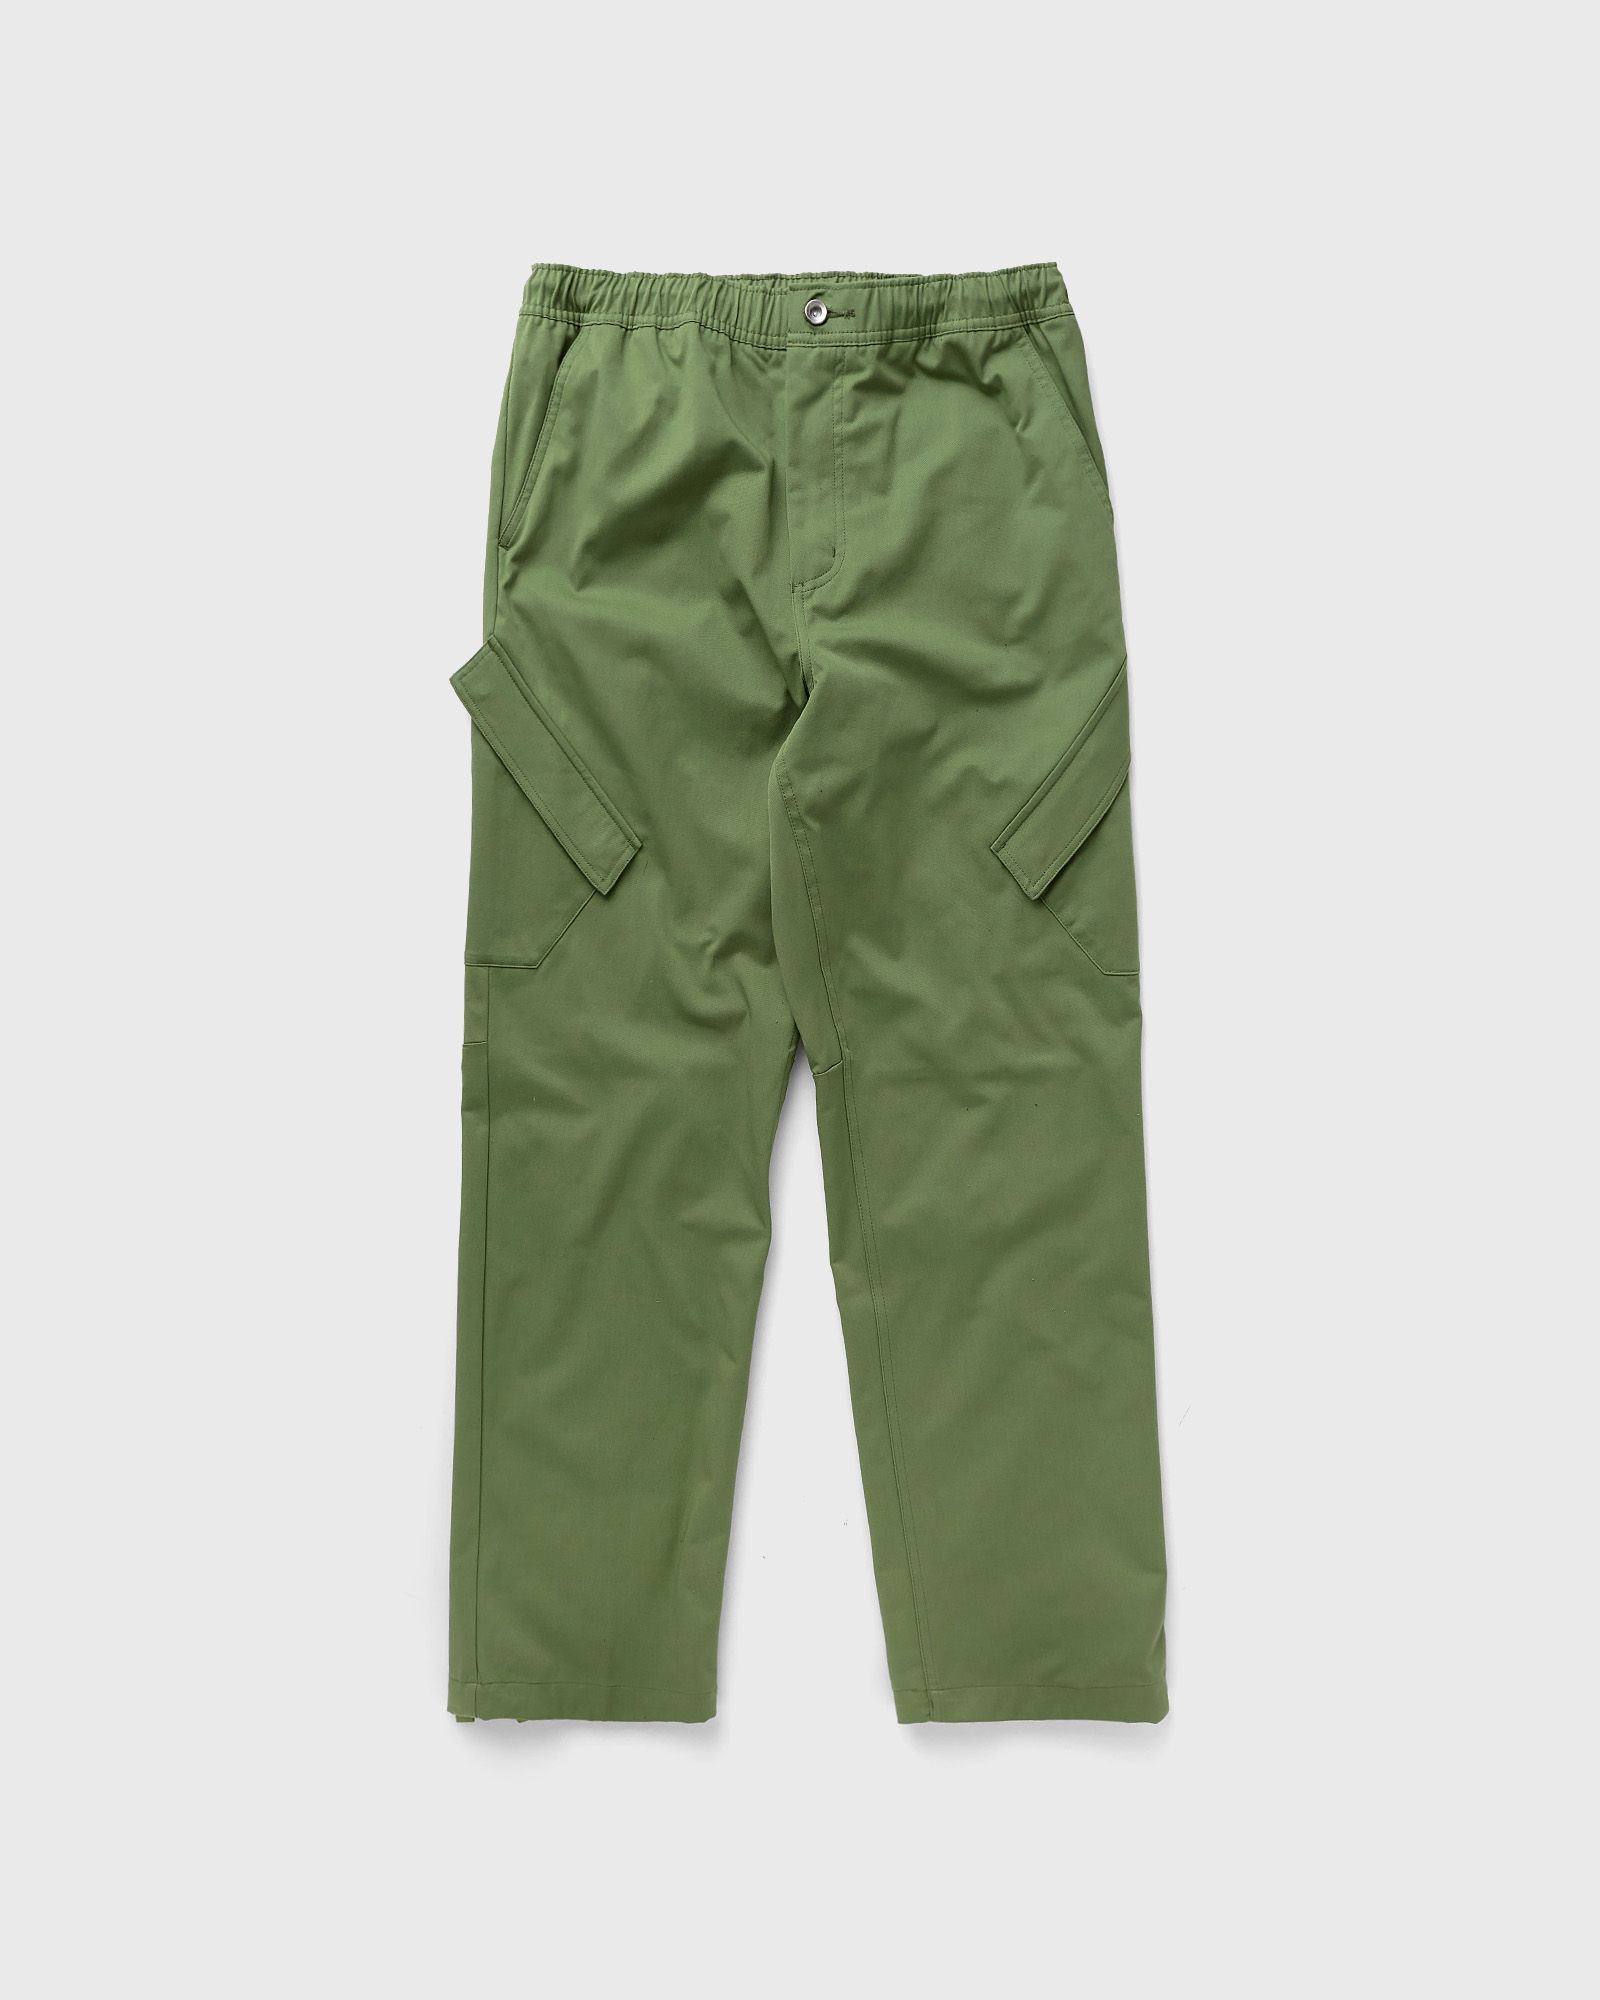 Jordan - essentials men's chicago pants men cargo pants green in größe:xl